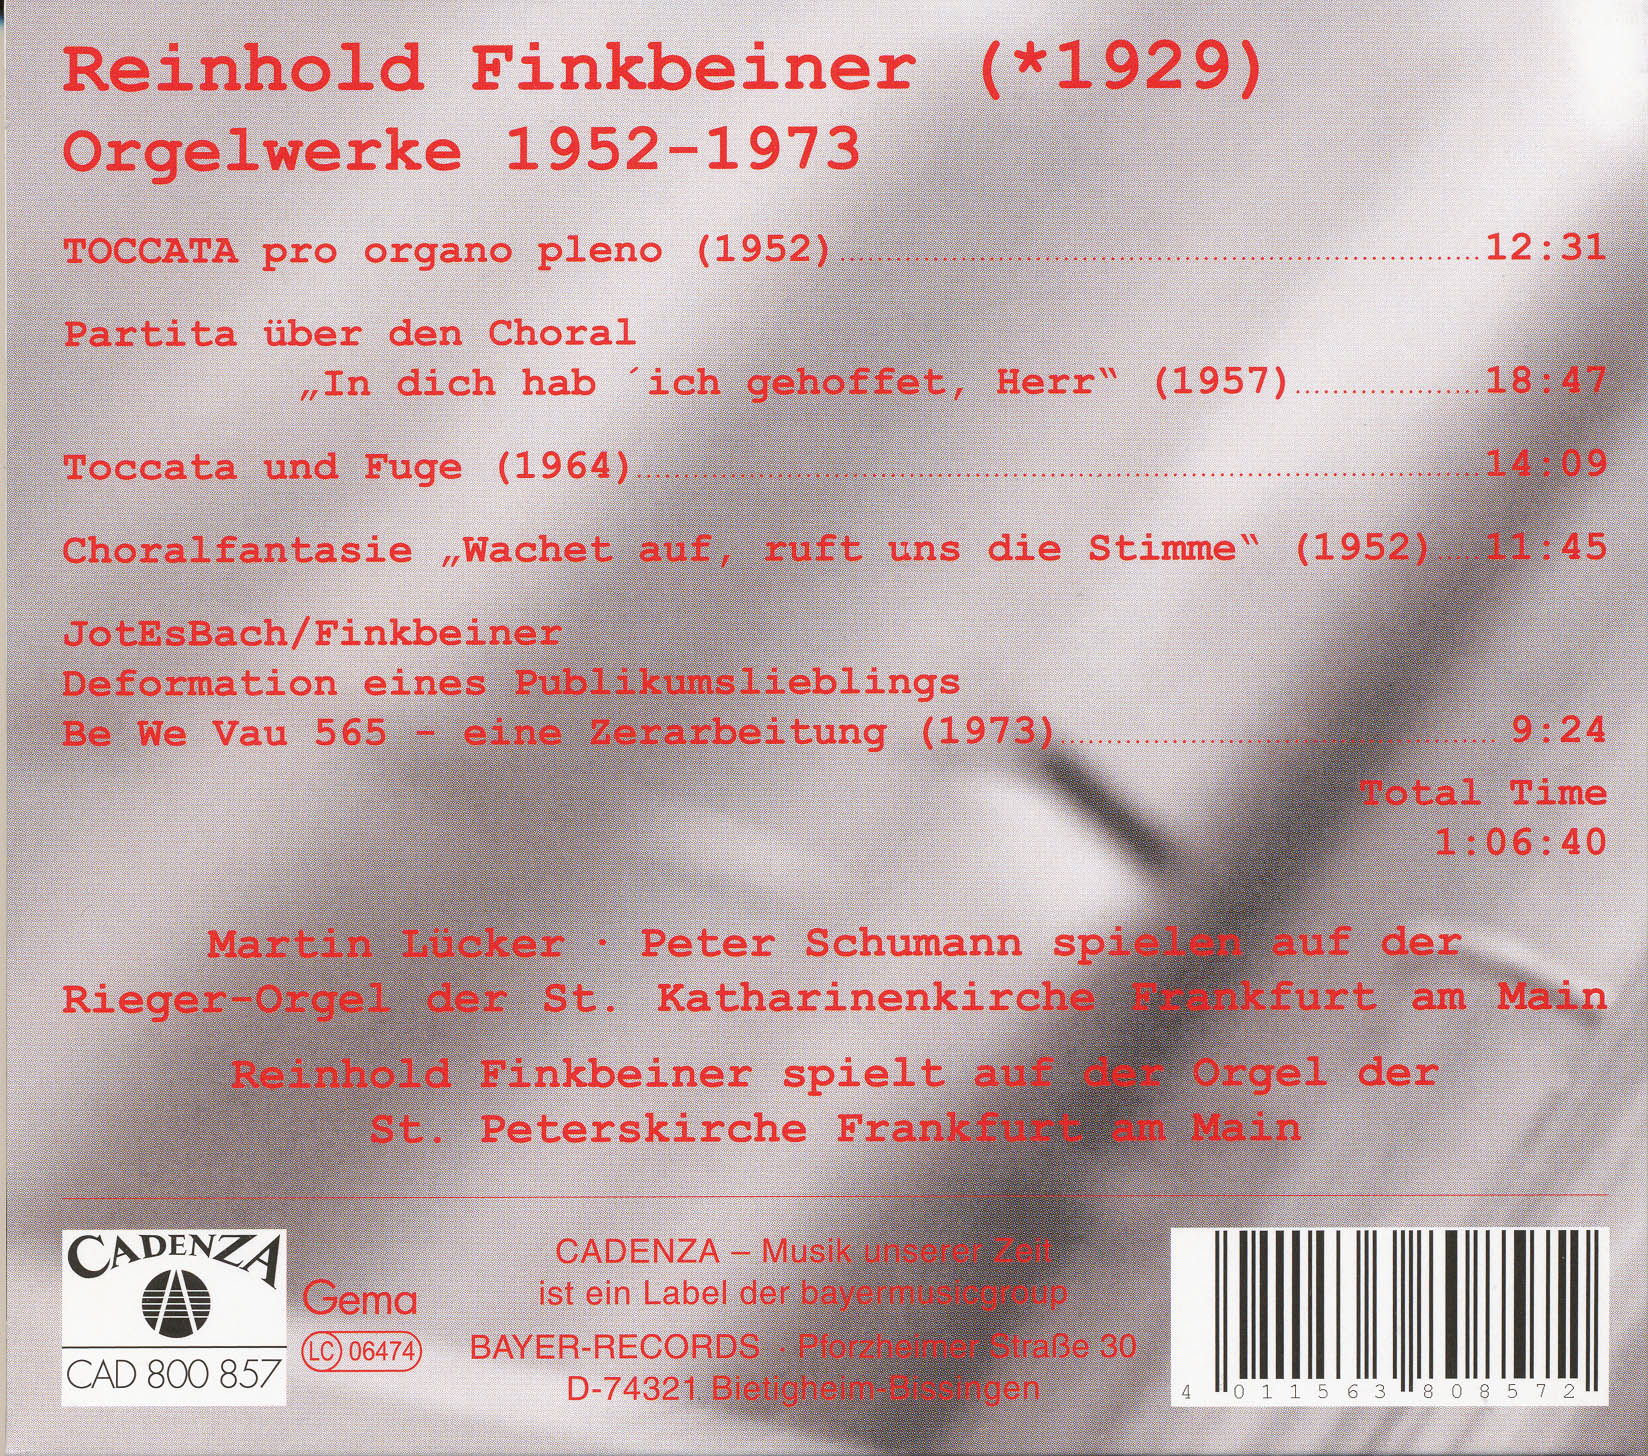 Reinhold Finkbeiner - Orgelwerke 1952-1973